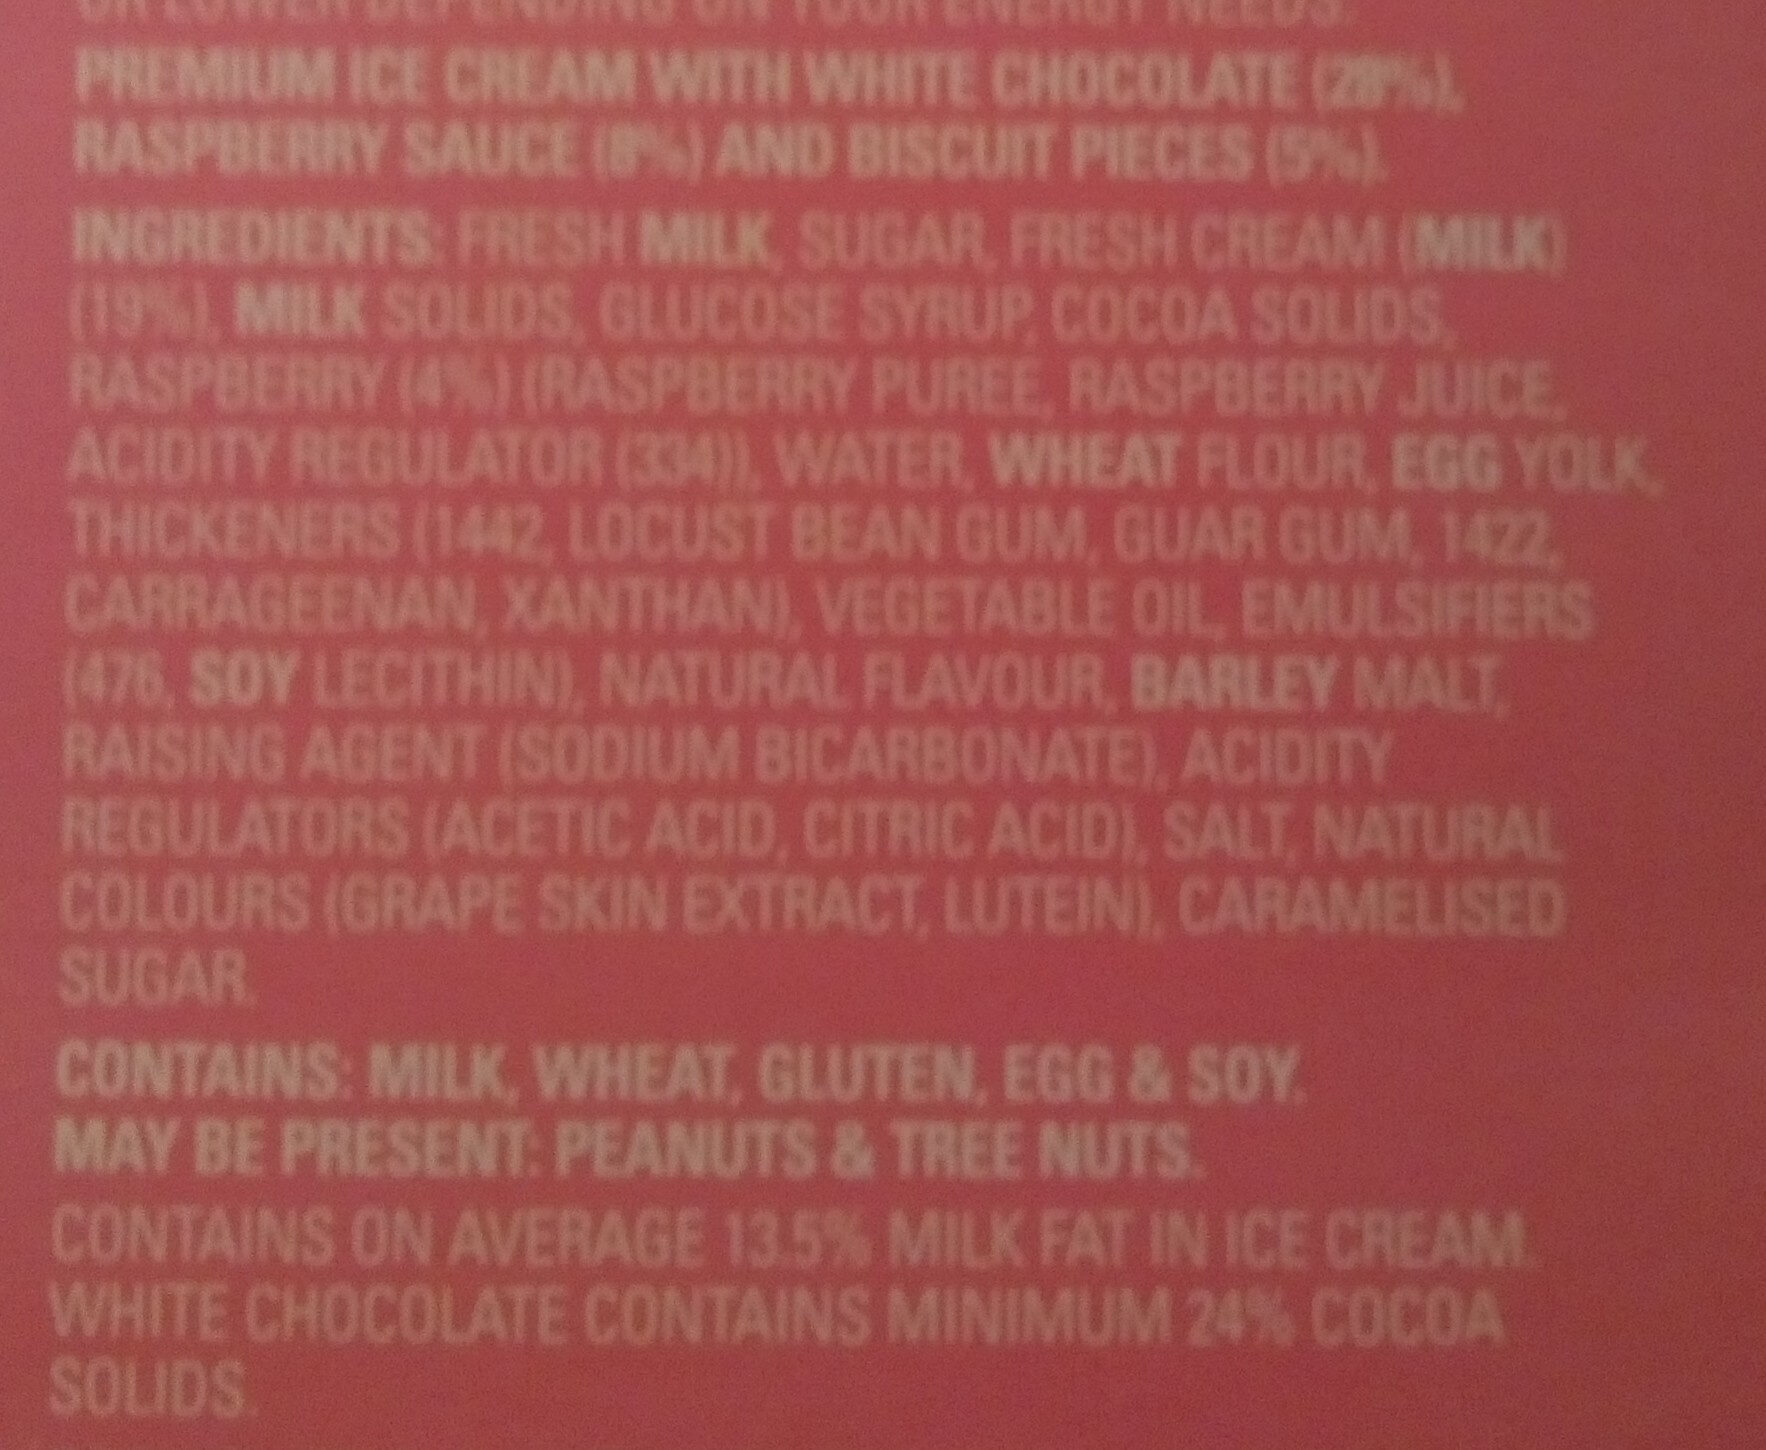 Raspberry Shortbread Ice Cream - Ingredients